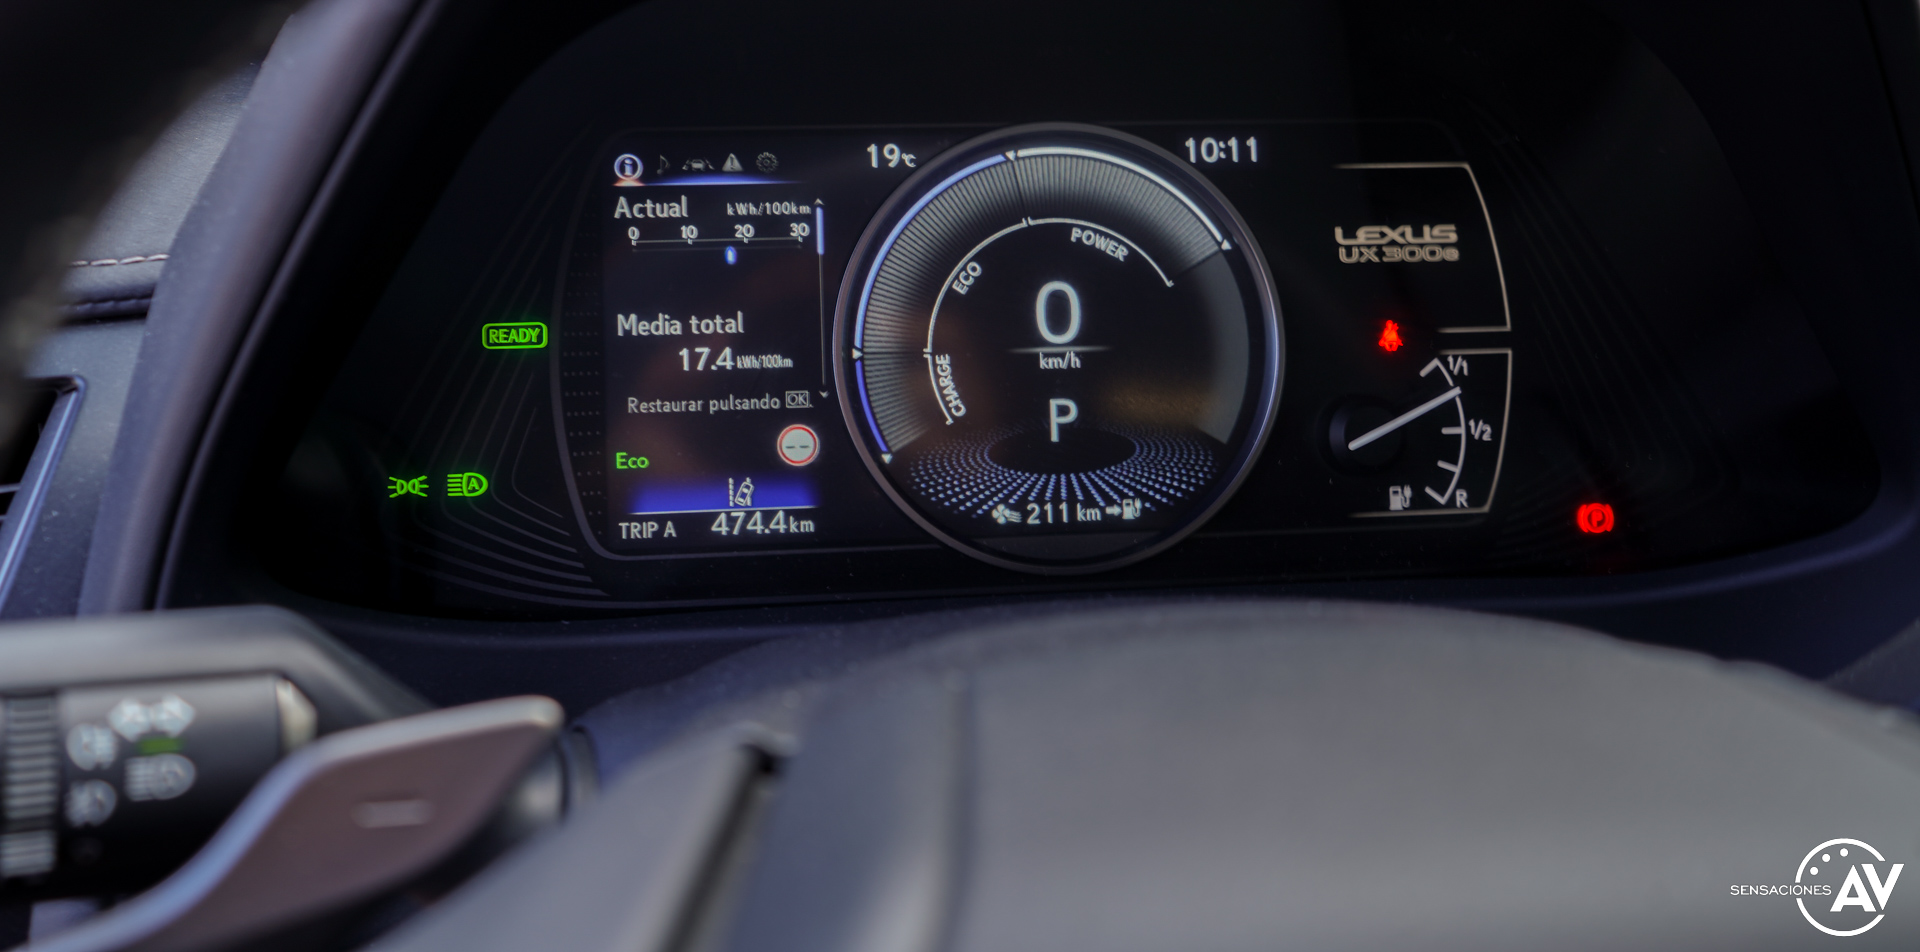 Tacometro Lexus UX 300e - Prueba Lexus UX 300e Business: Lujo, confort, garantía y electricidad todo en uno